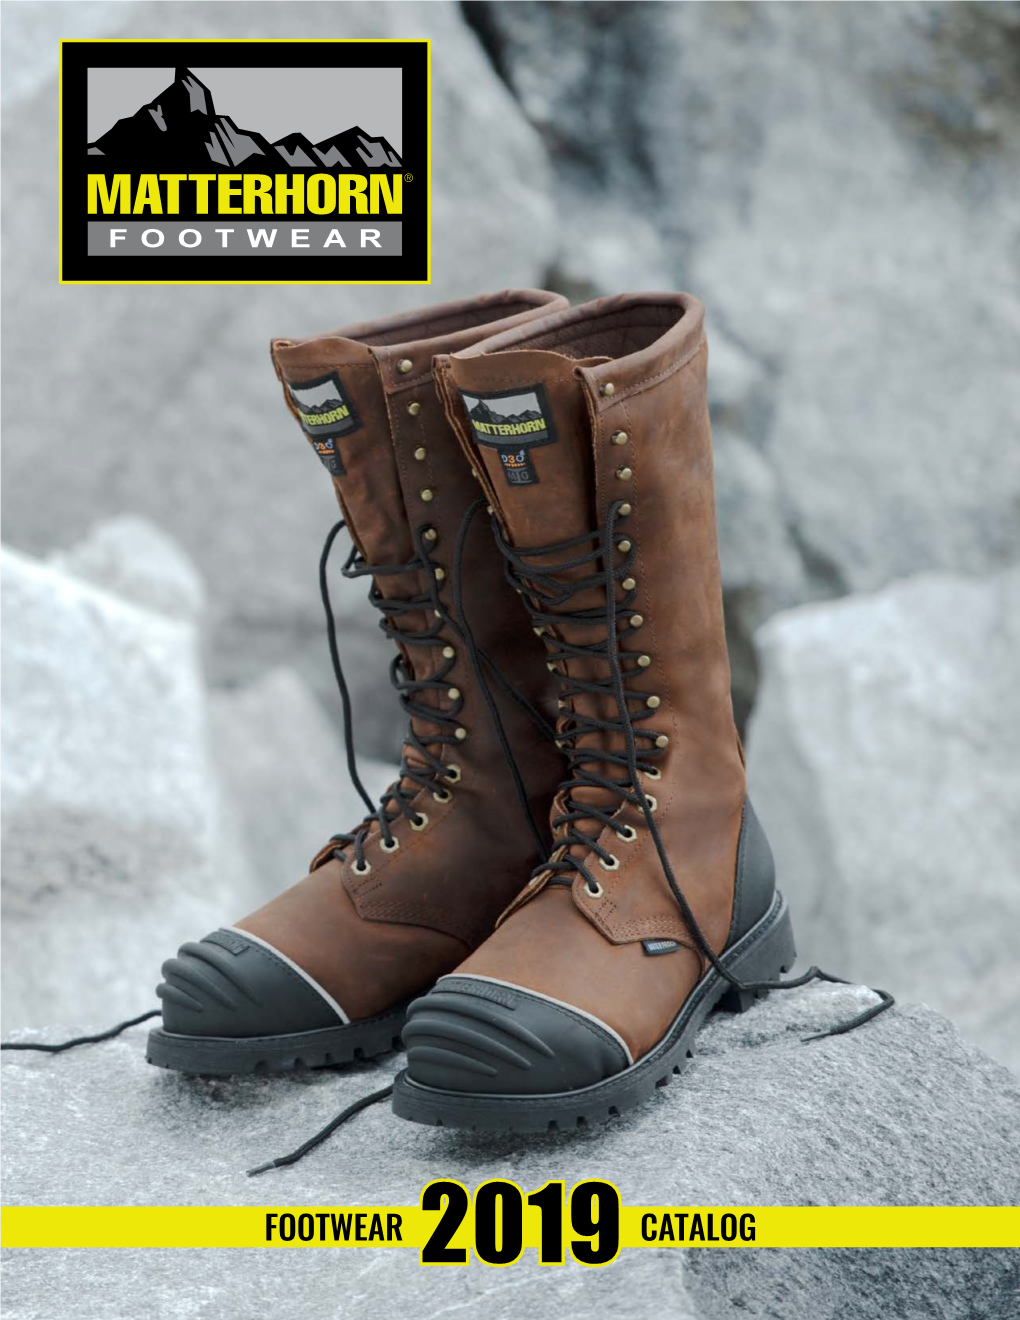 Matterhorn Footwear 2019 Catalog